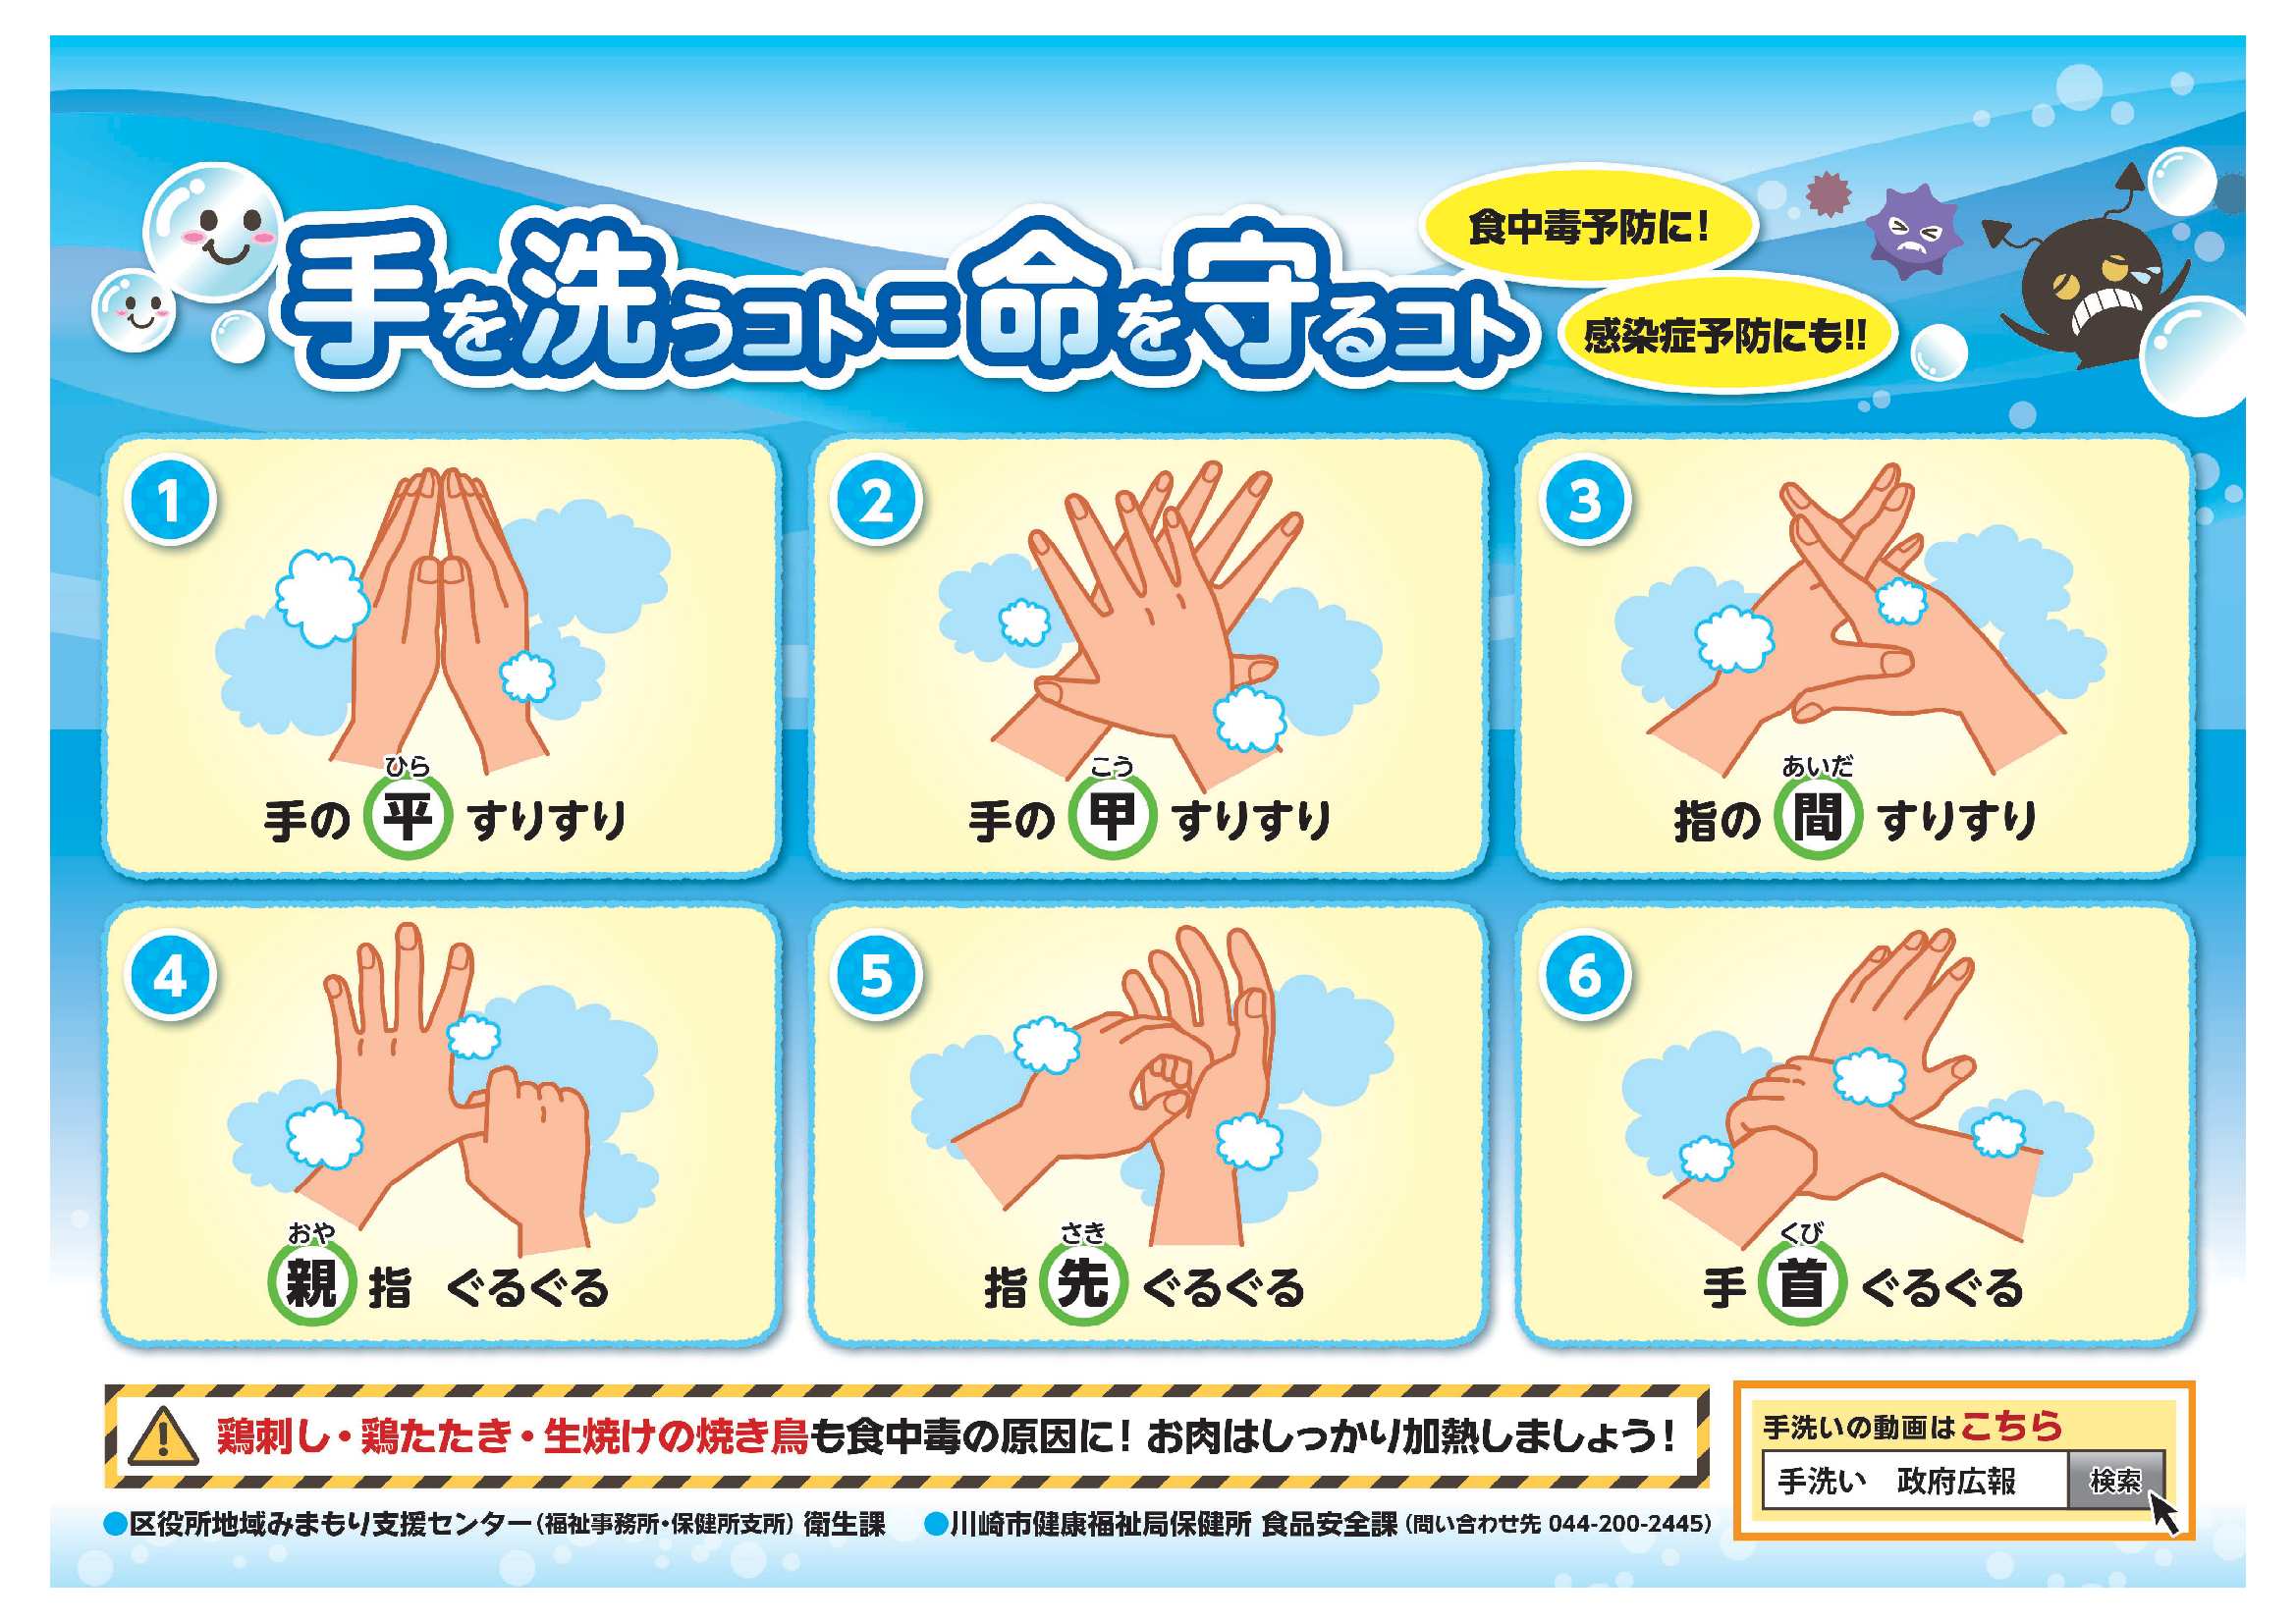 川崎市 食中毒及び感染症予防のための正しい手洗い方法 手を洗うコト 命を守るコト